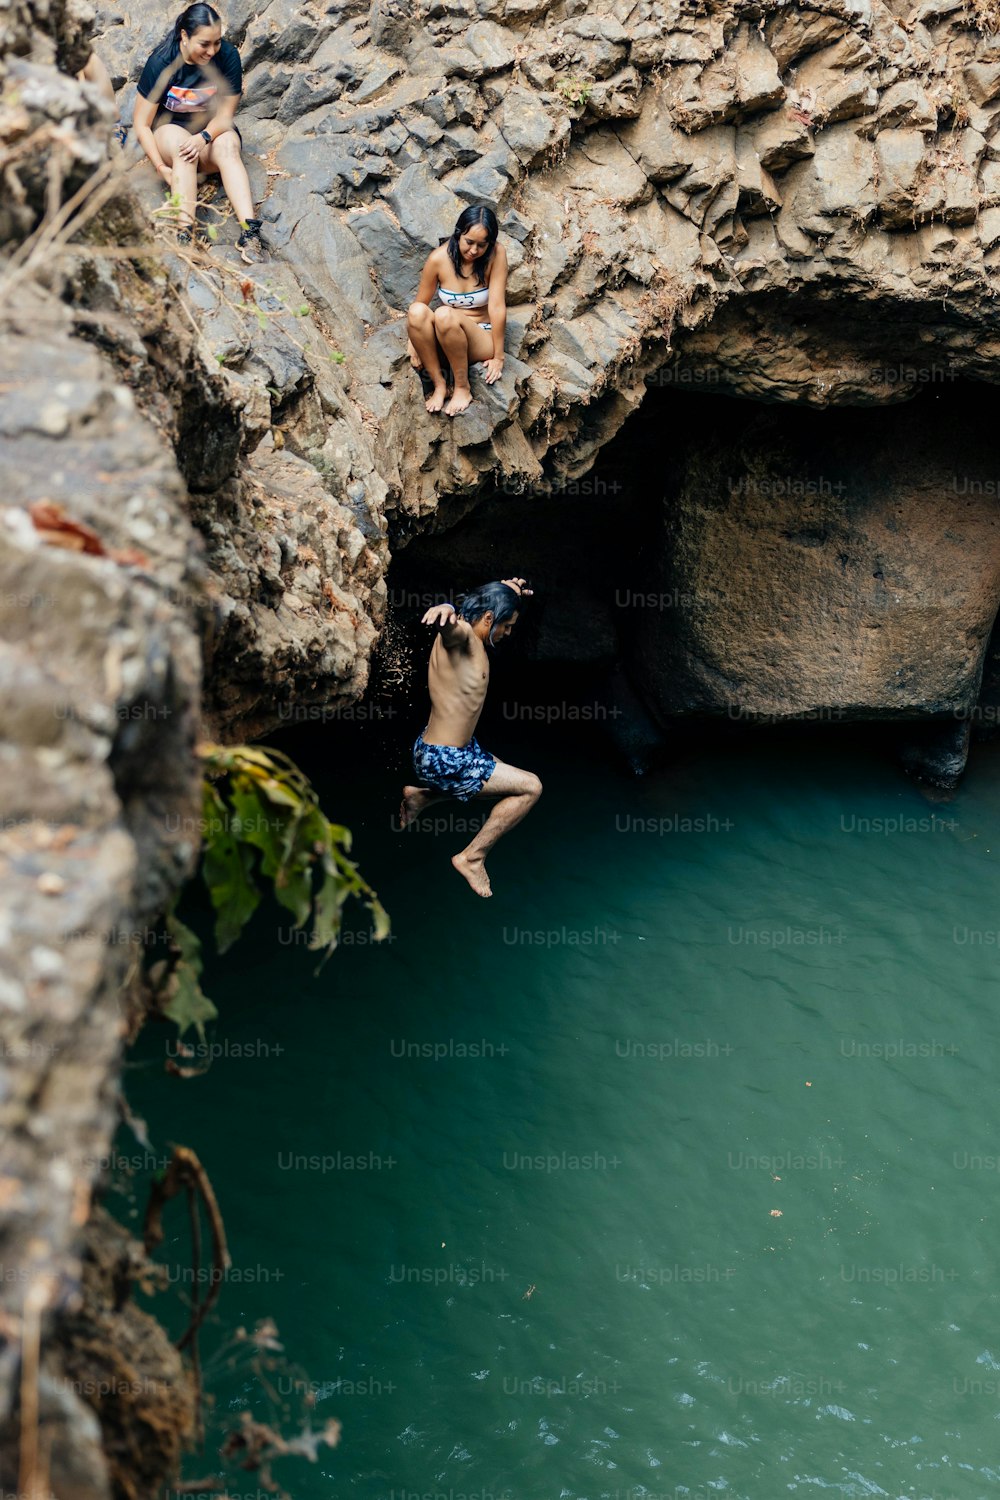 Eine Gruppe von Menschen, die von einer Klippe in ein Gewässer springen